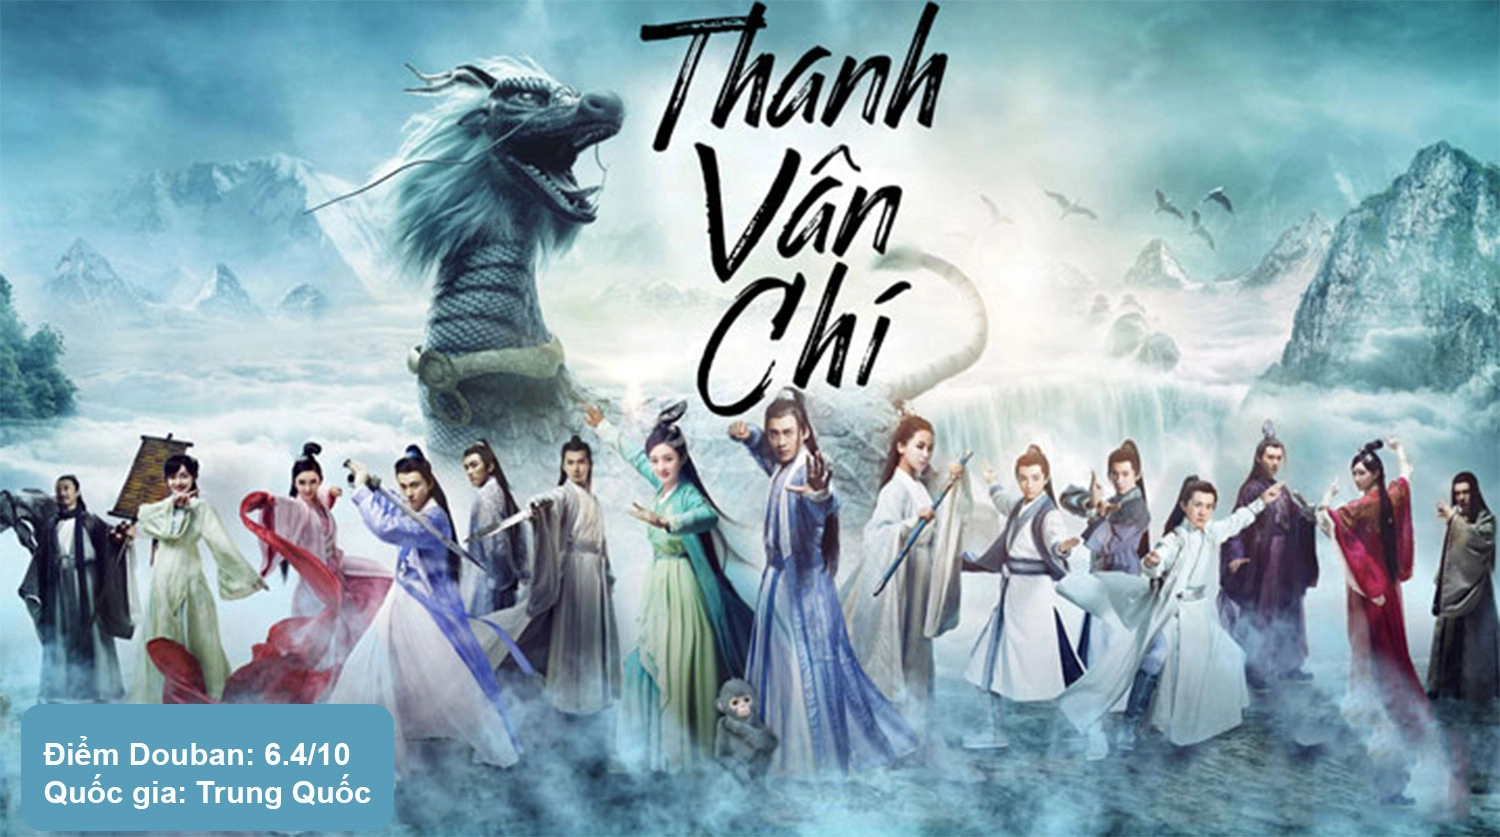 The Legend of Chusen – Tru Tiên: Thanh Vân Chí 